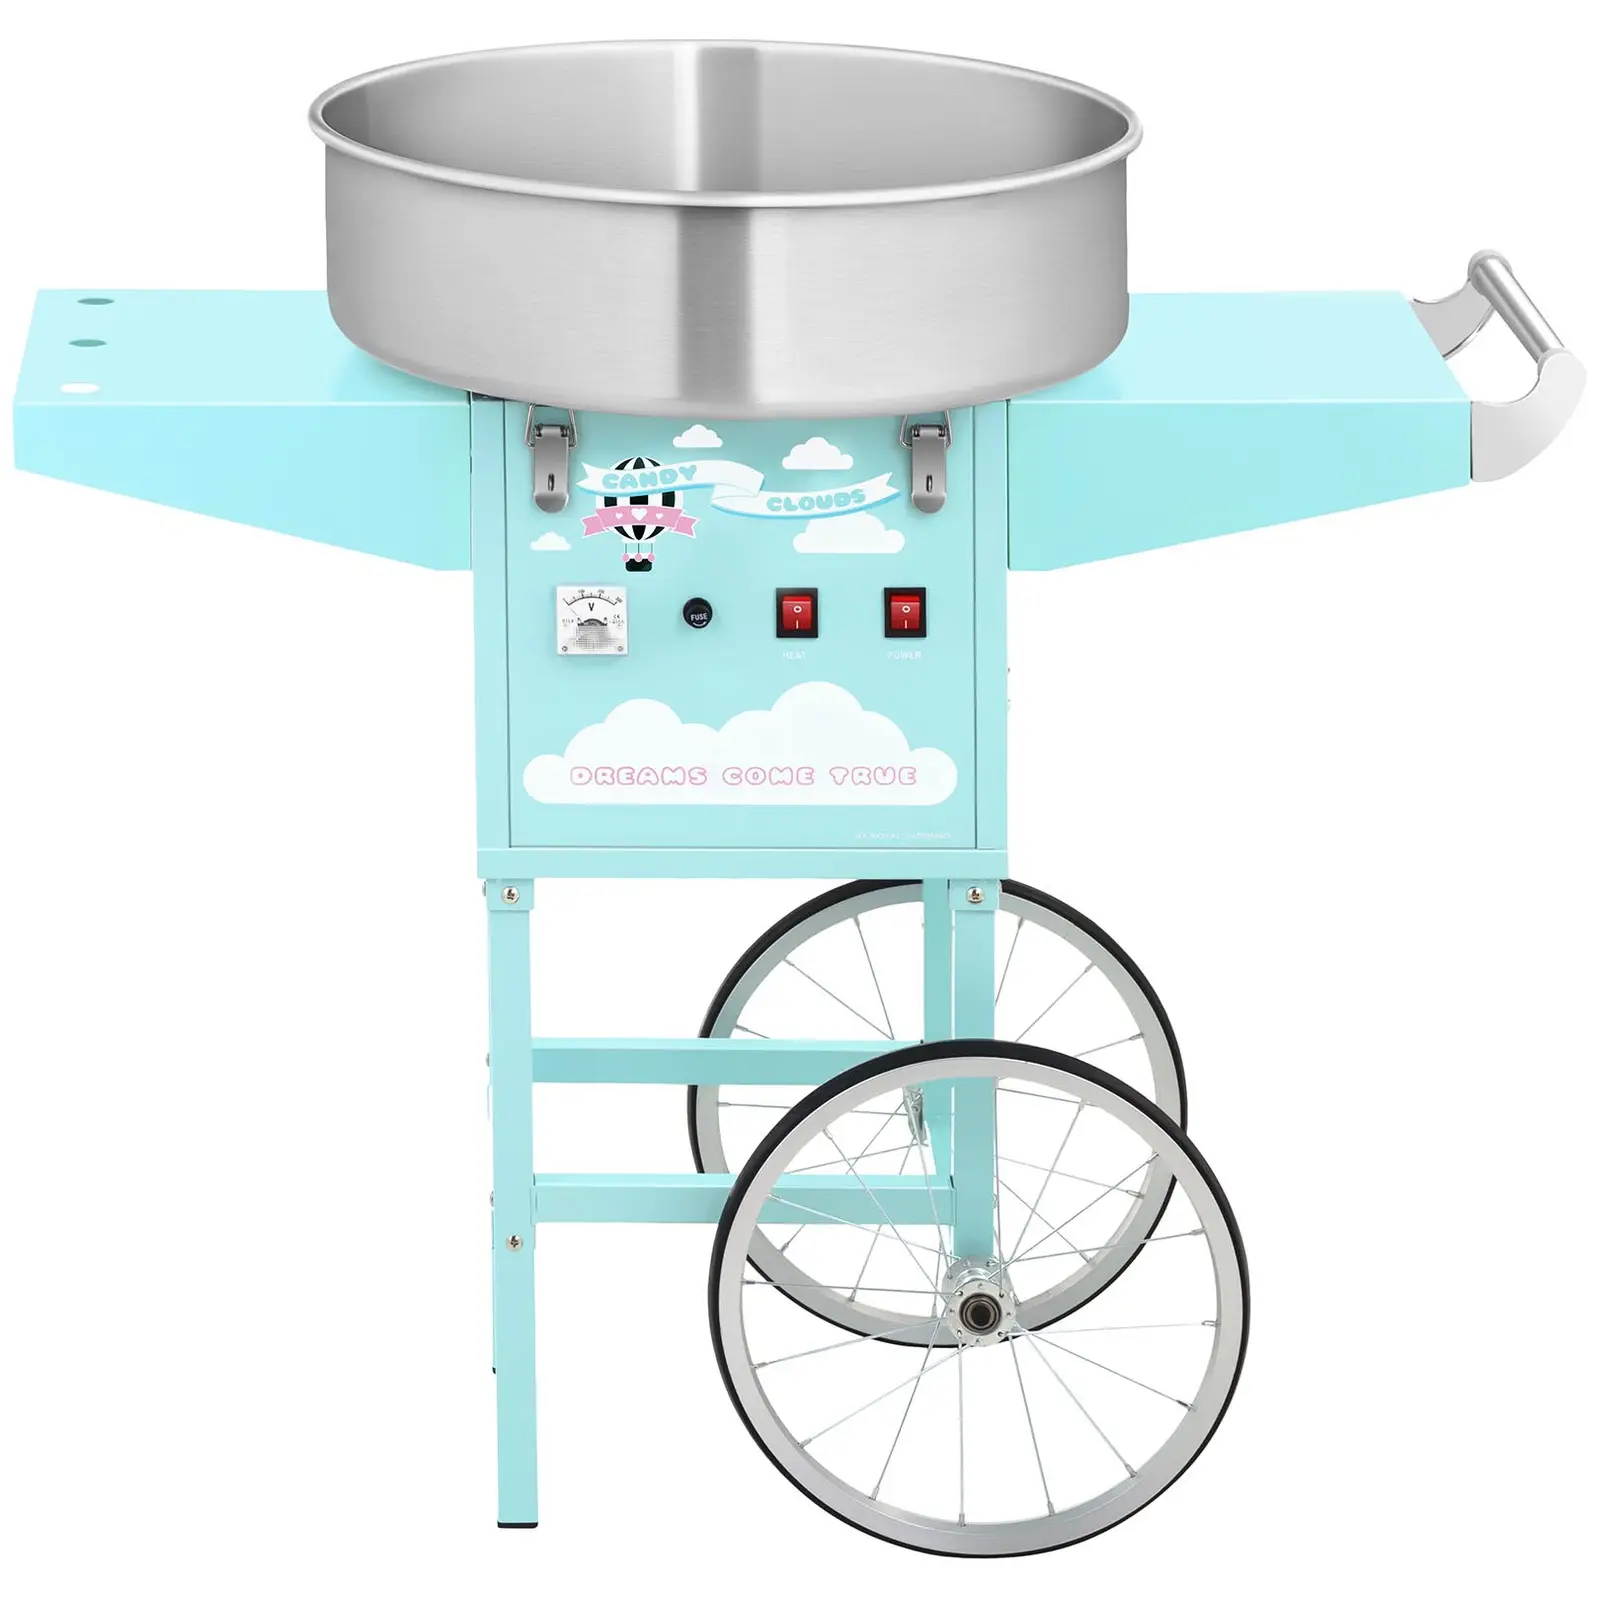 Stroj na cukrovou vatu s vozíkem a ochranným krytem - 52 cm - 1 200 W - tyrkysový